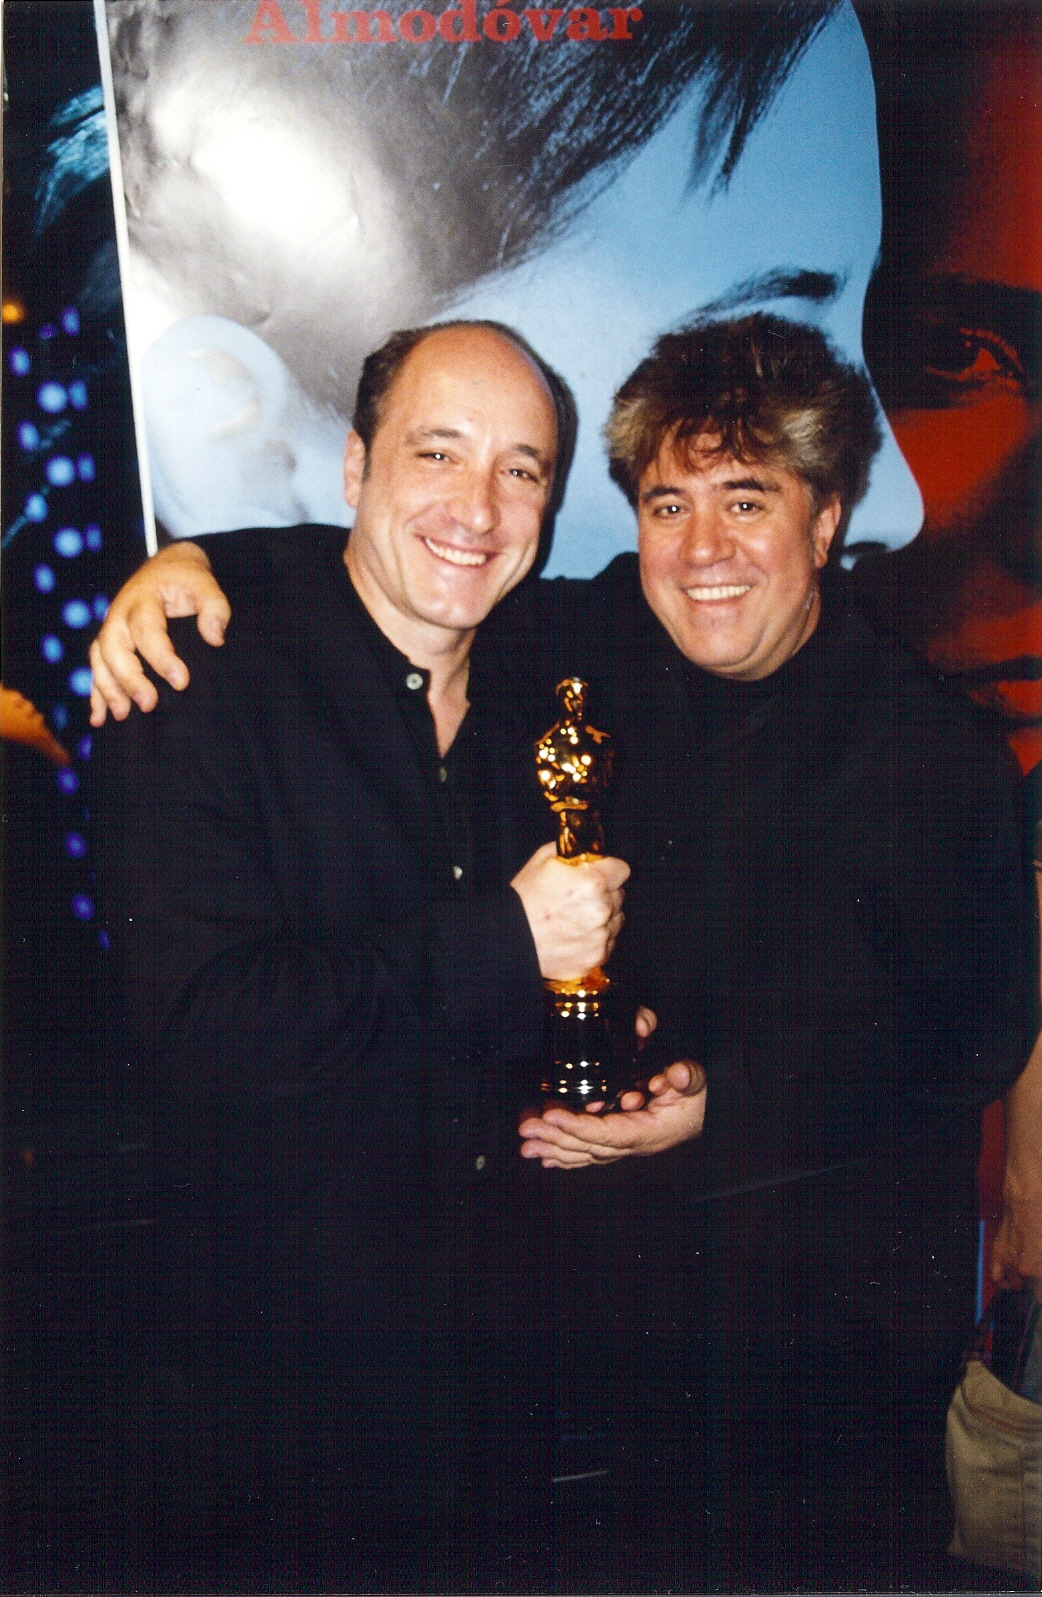 Pedro Almodóvar and Roberto Álvarez in Hable con ella (2002)